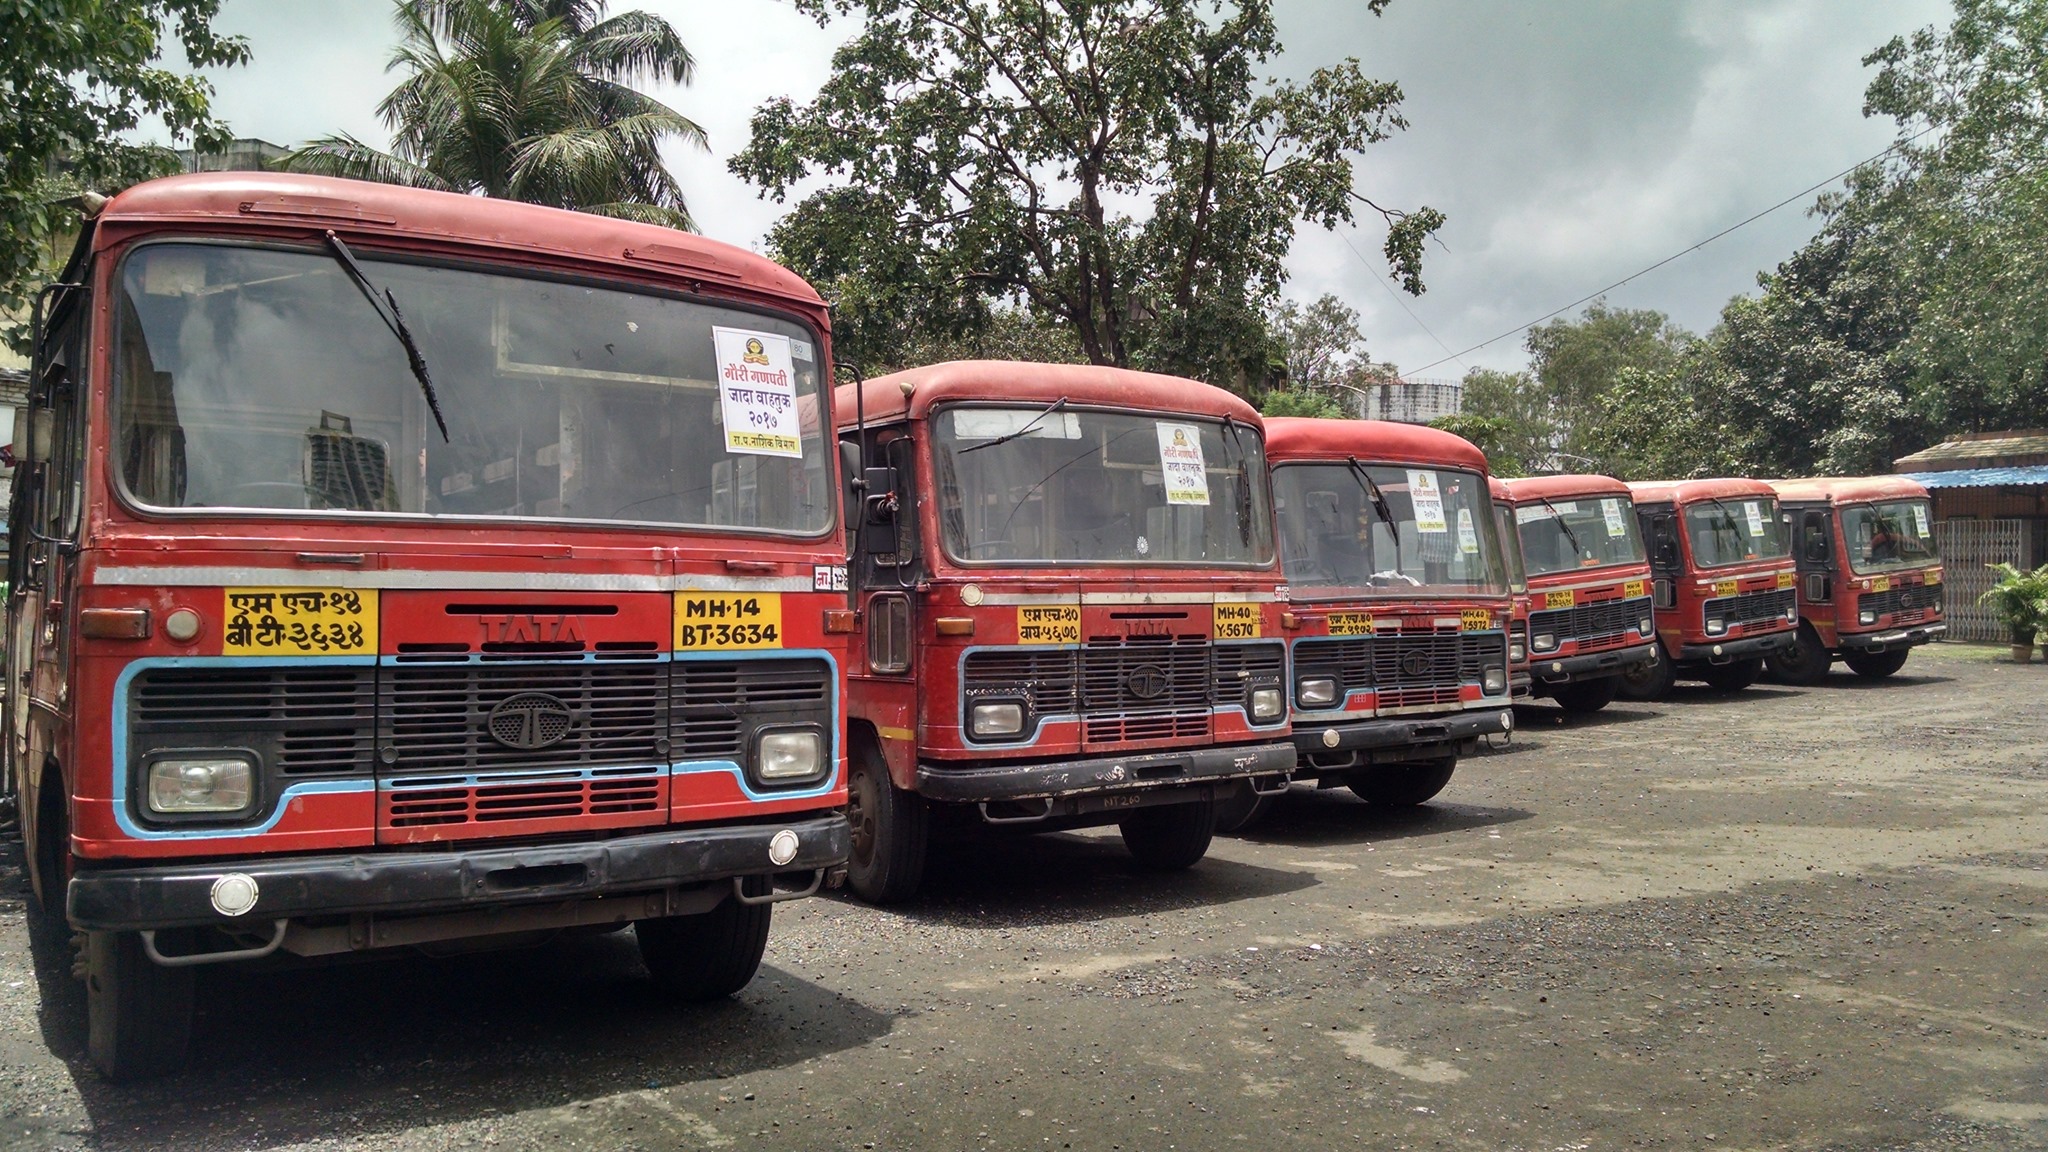 महाराष्ट्र परिवहन निगम कर्मचारी हड़ताल: कोर्ट ने समिति को 20 दिसंबर को अपनी प्रारंभिक रिपोर्ट सौंपने के निर्देश दिए